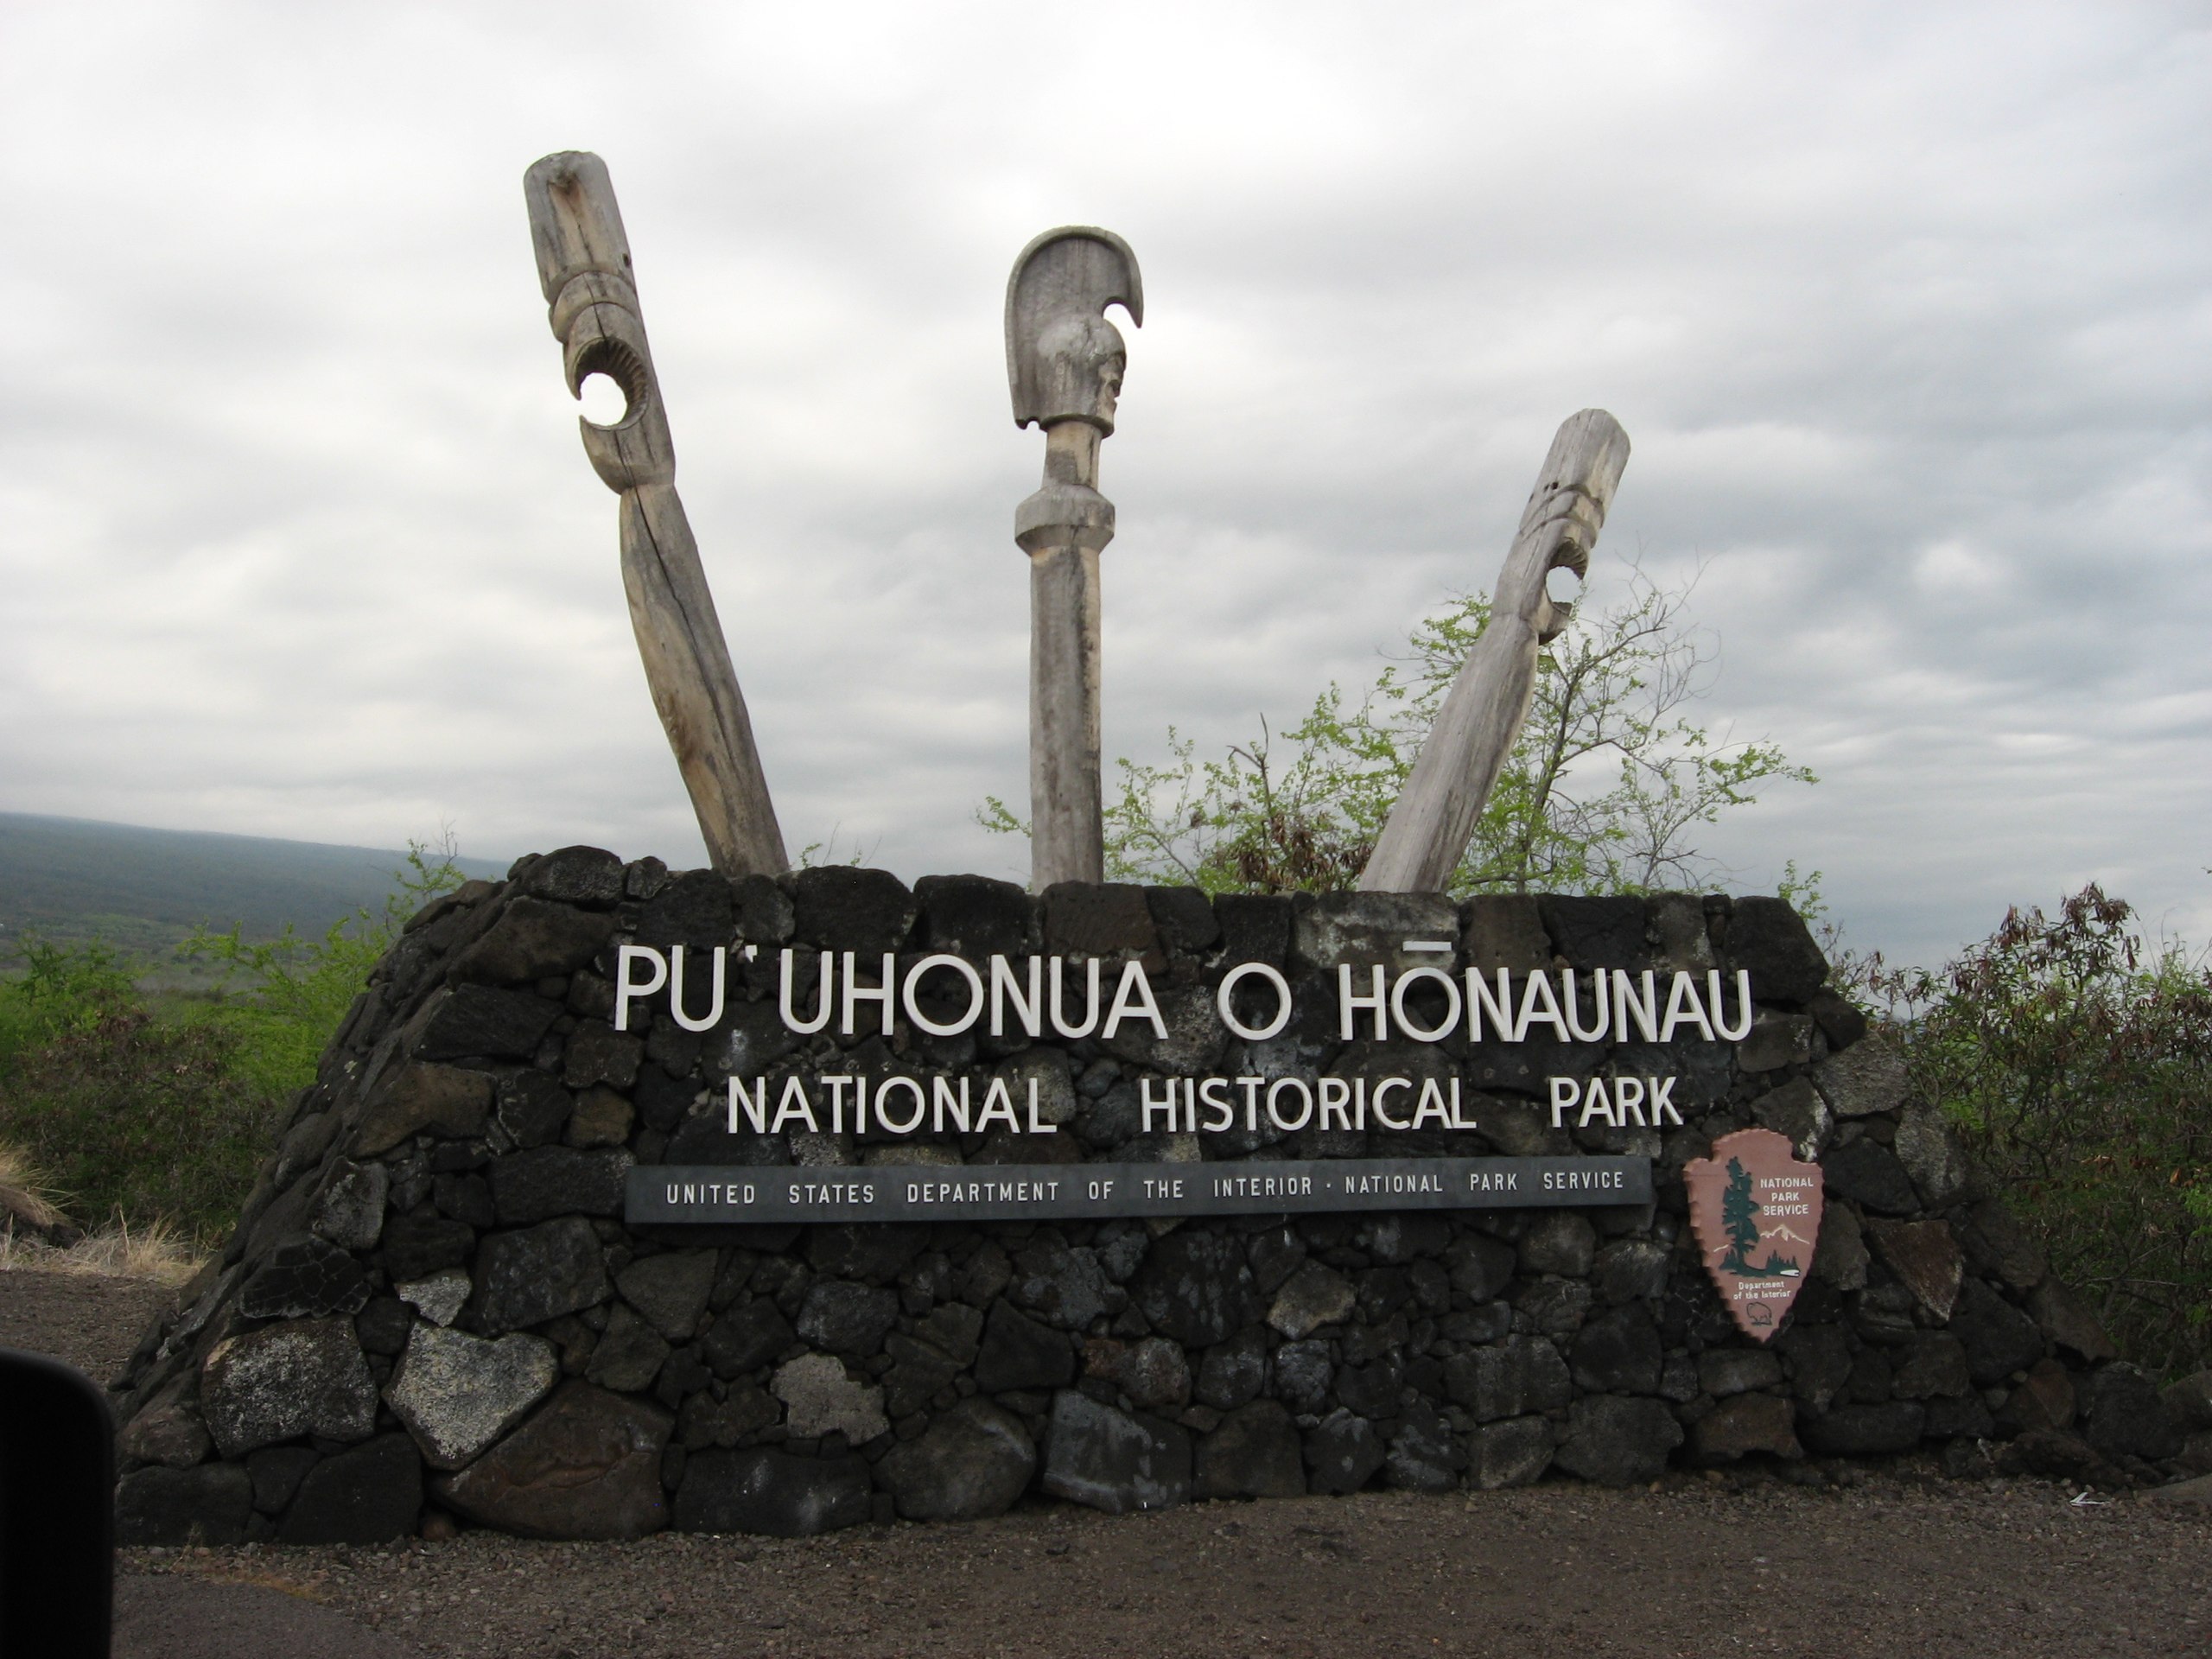 Entrance to the Puʻuhonua o Hōnaunau National Historical Park.